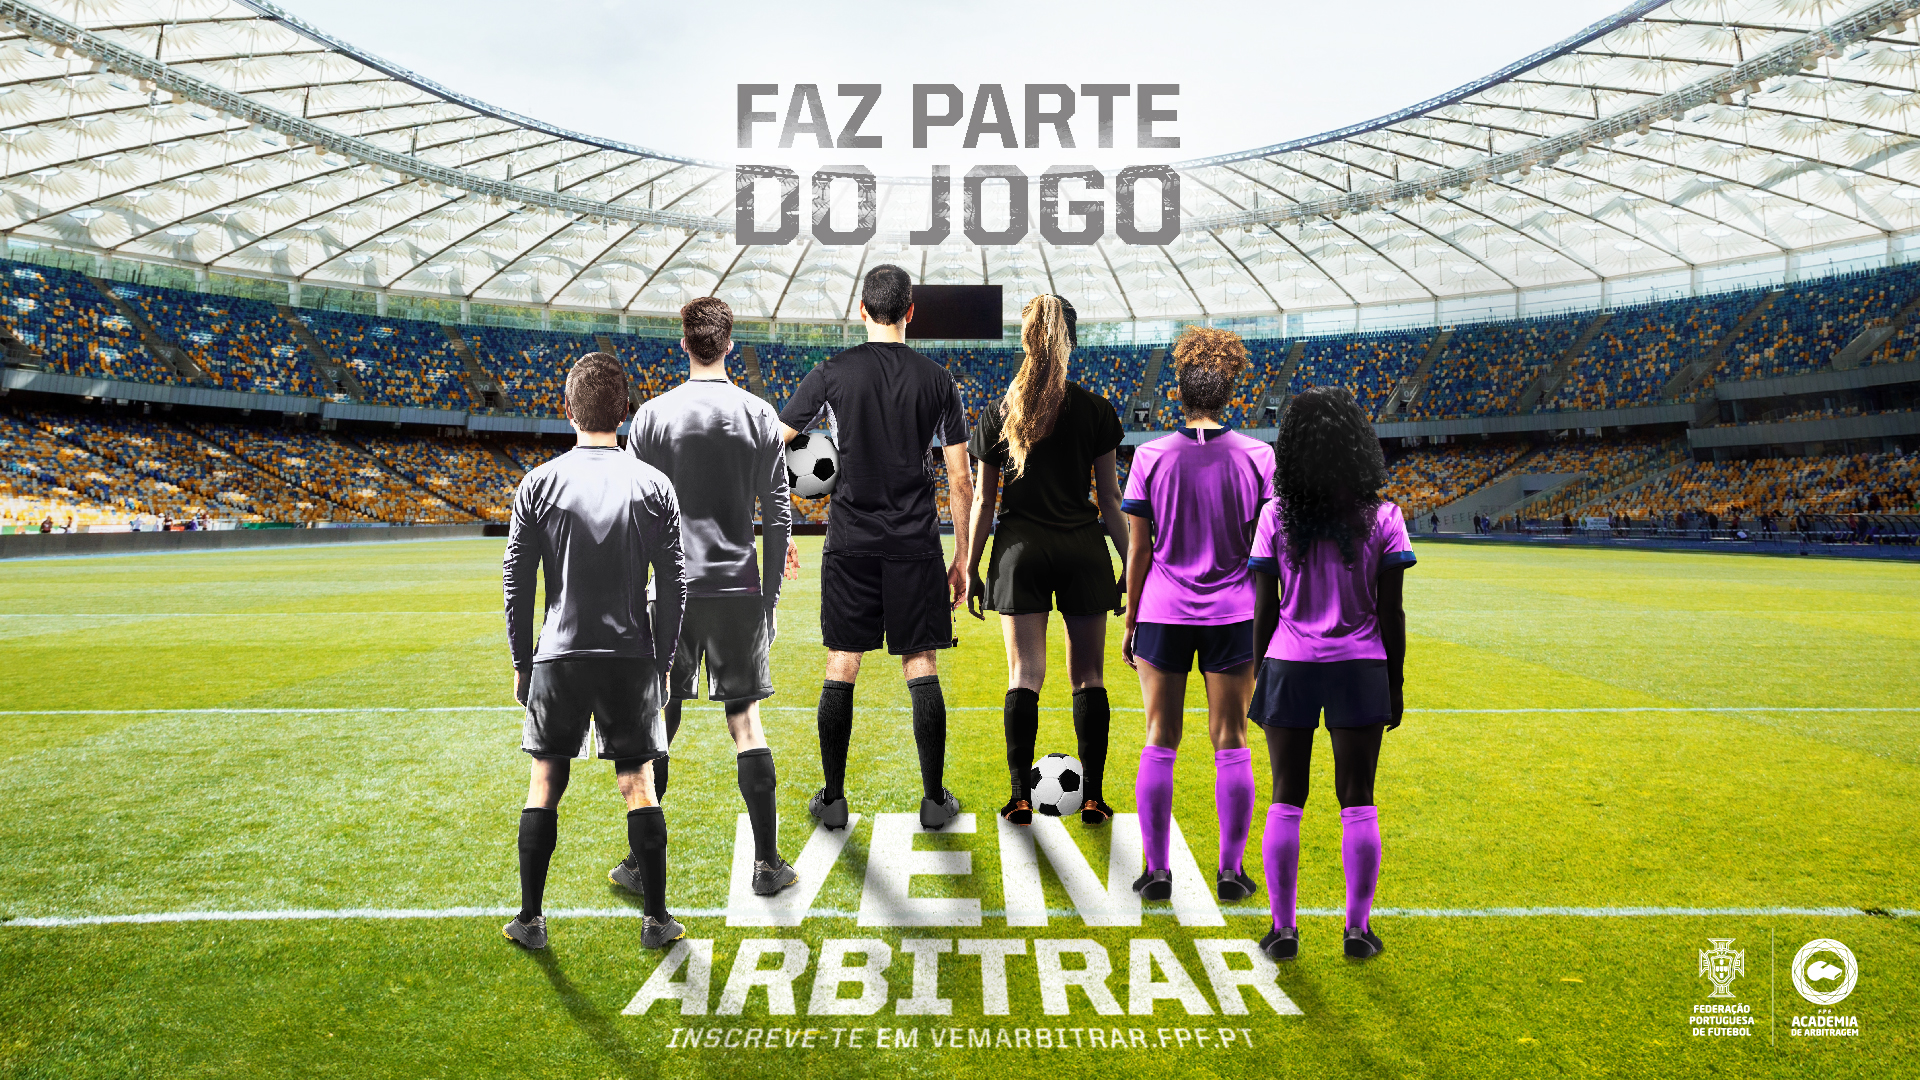 FADU - Portugal defronta Brasil e GD Boticas em jogos de preparação